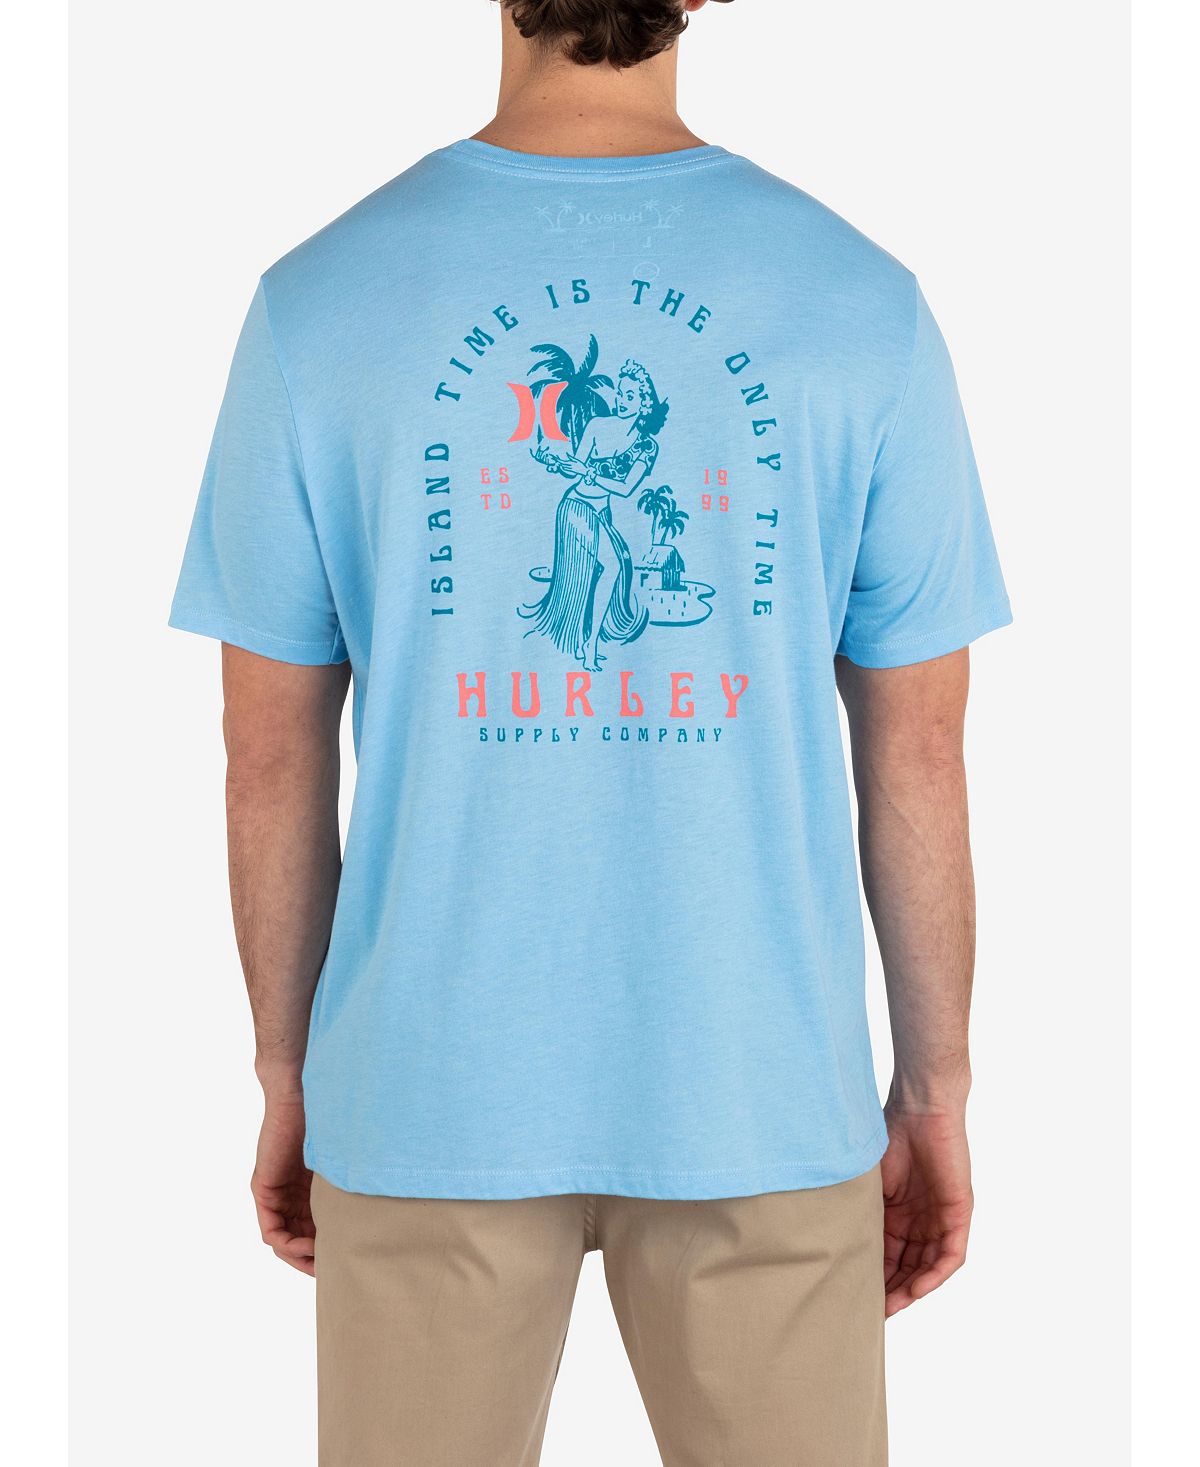 Мужская футболка Island Time с коротким рукавом на каждый день Hurley мужская повседневная футболка с коротким рукавом four corners hurley